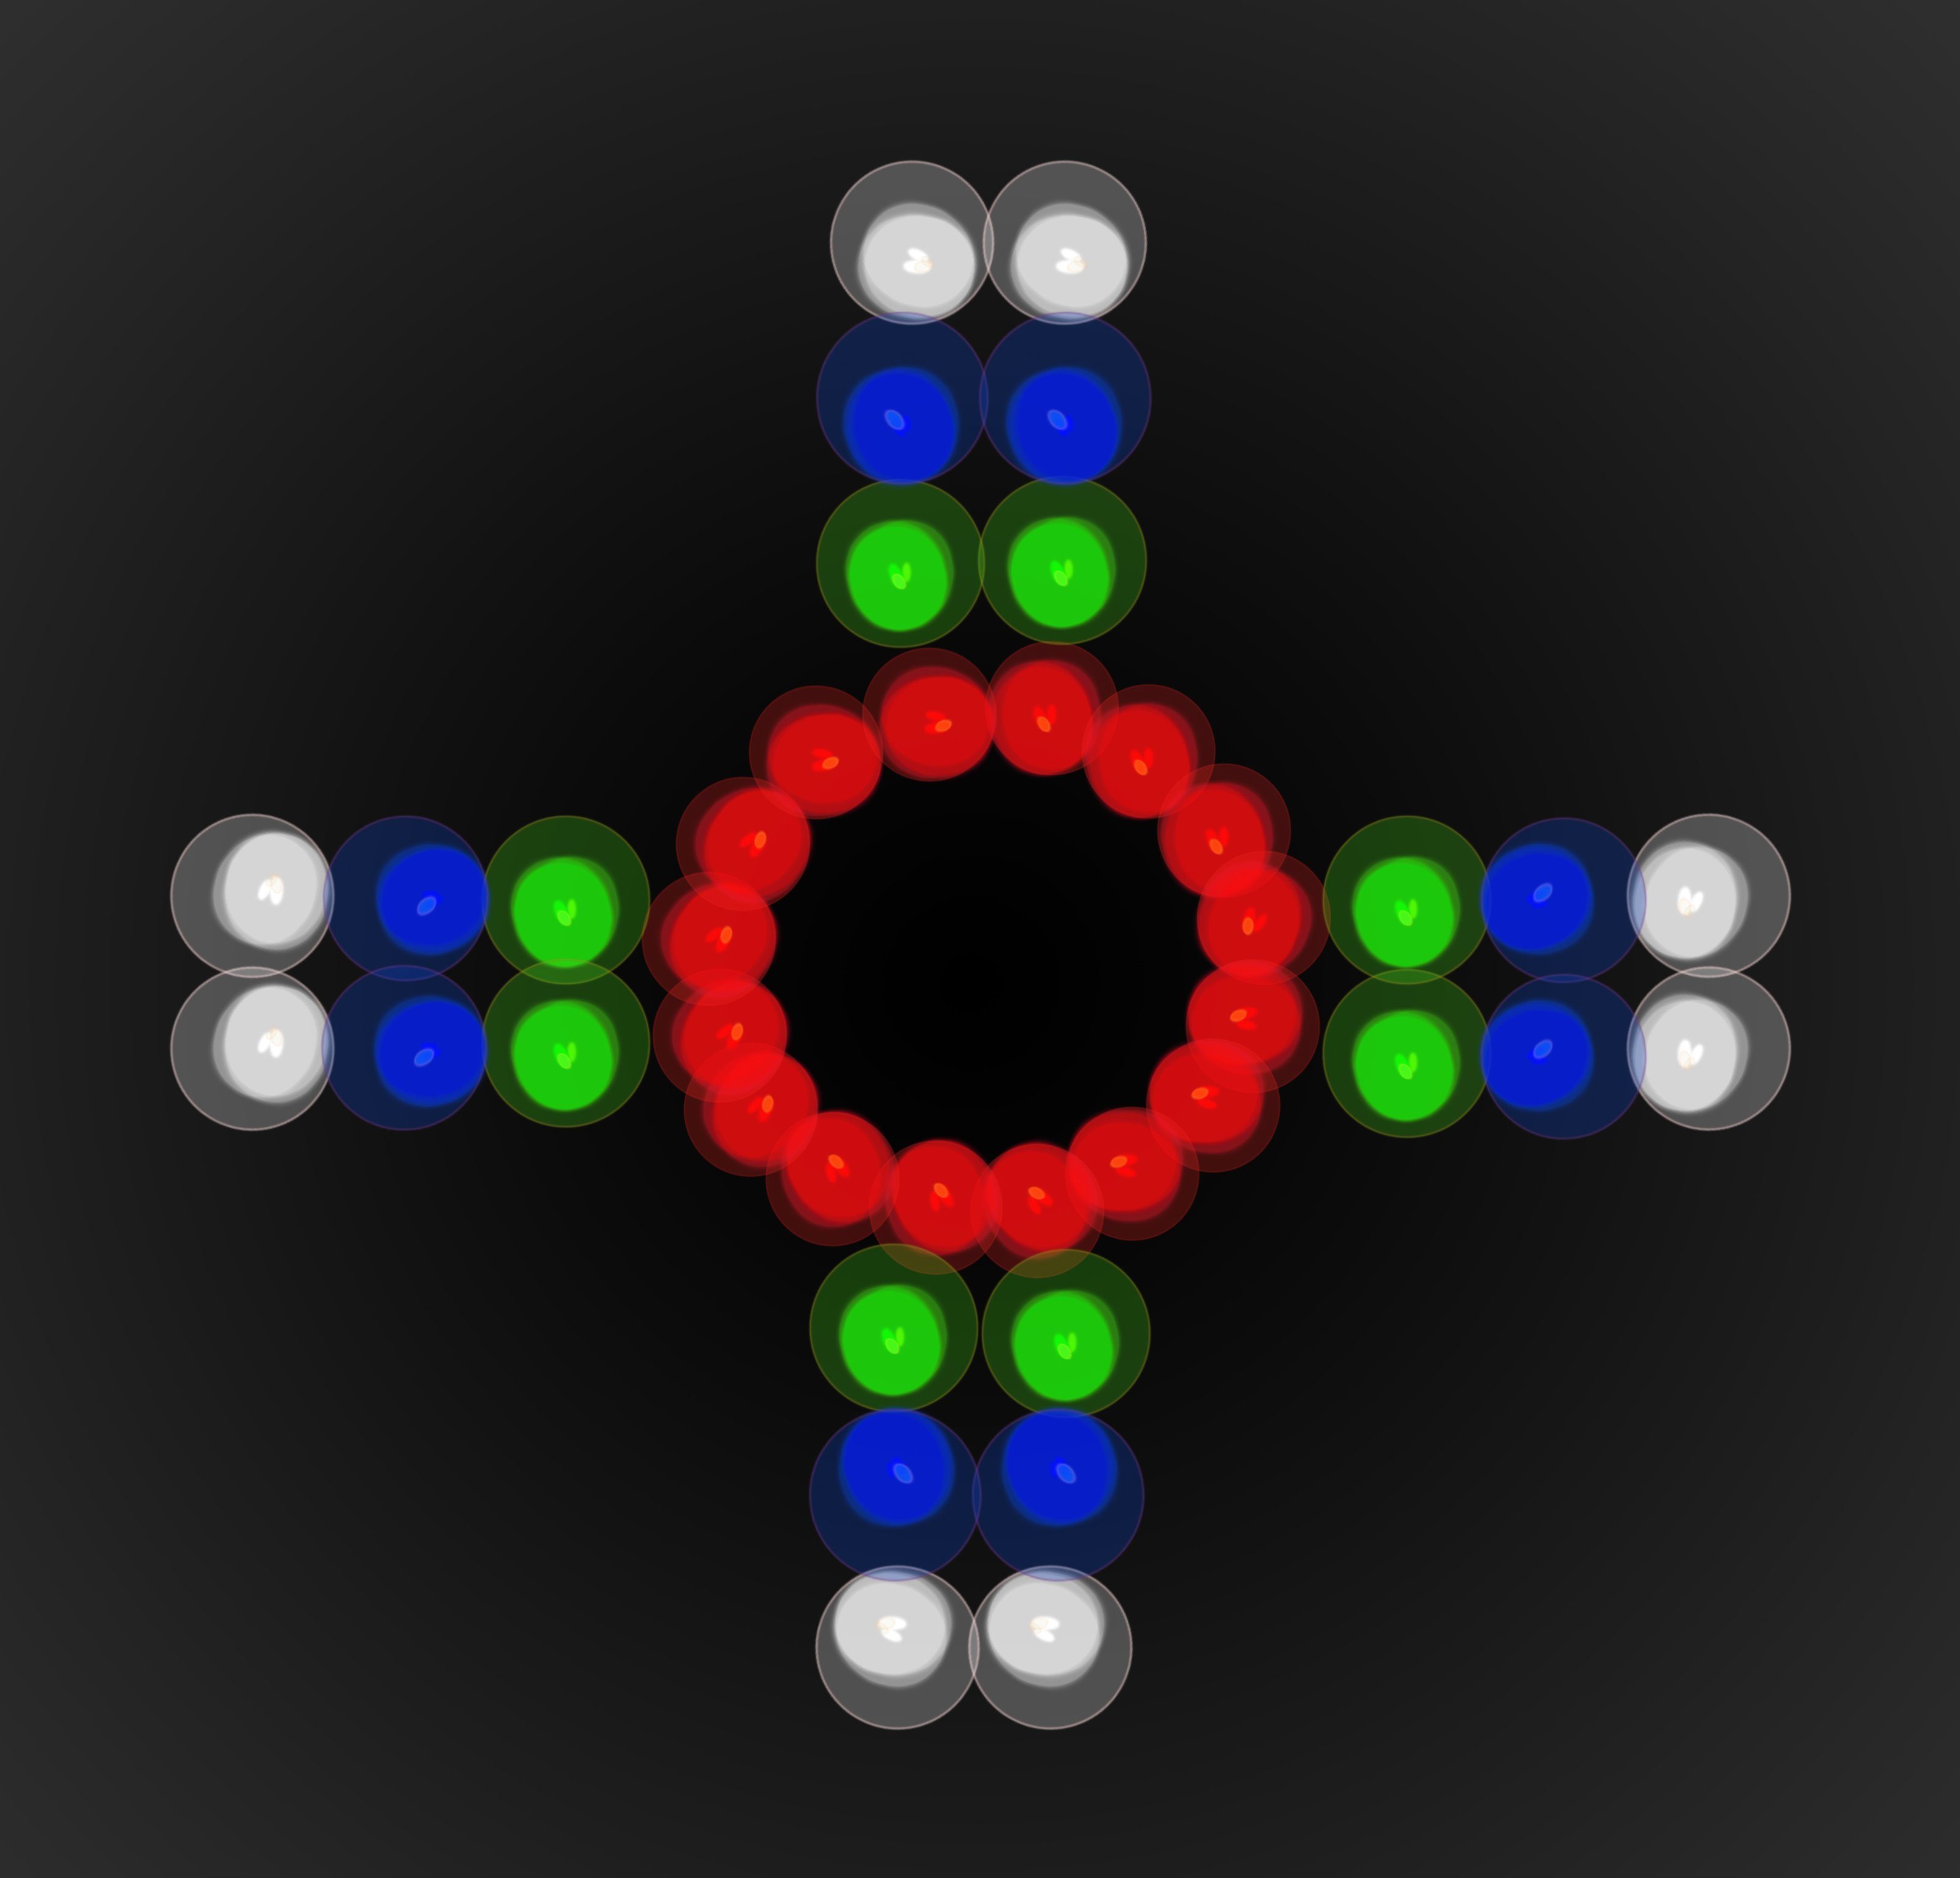 Alecto LED Discolicht Stroboskop- Strahleneffekt, Blau,Grün,Rot,Weiß Dynamischer einstellbar, LE-180, Farbeffekte und